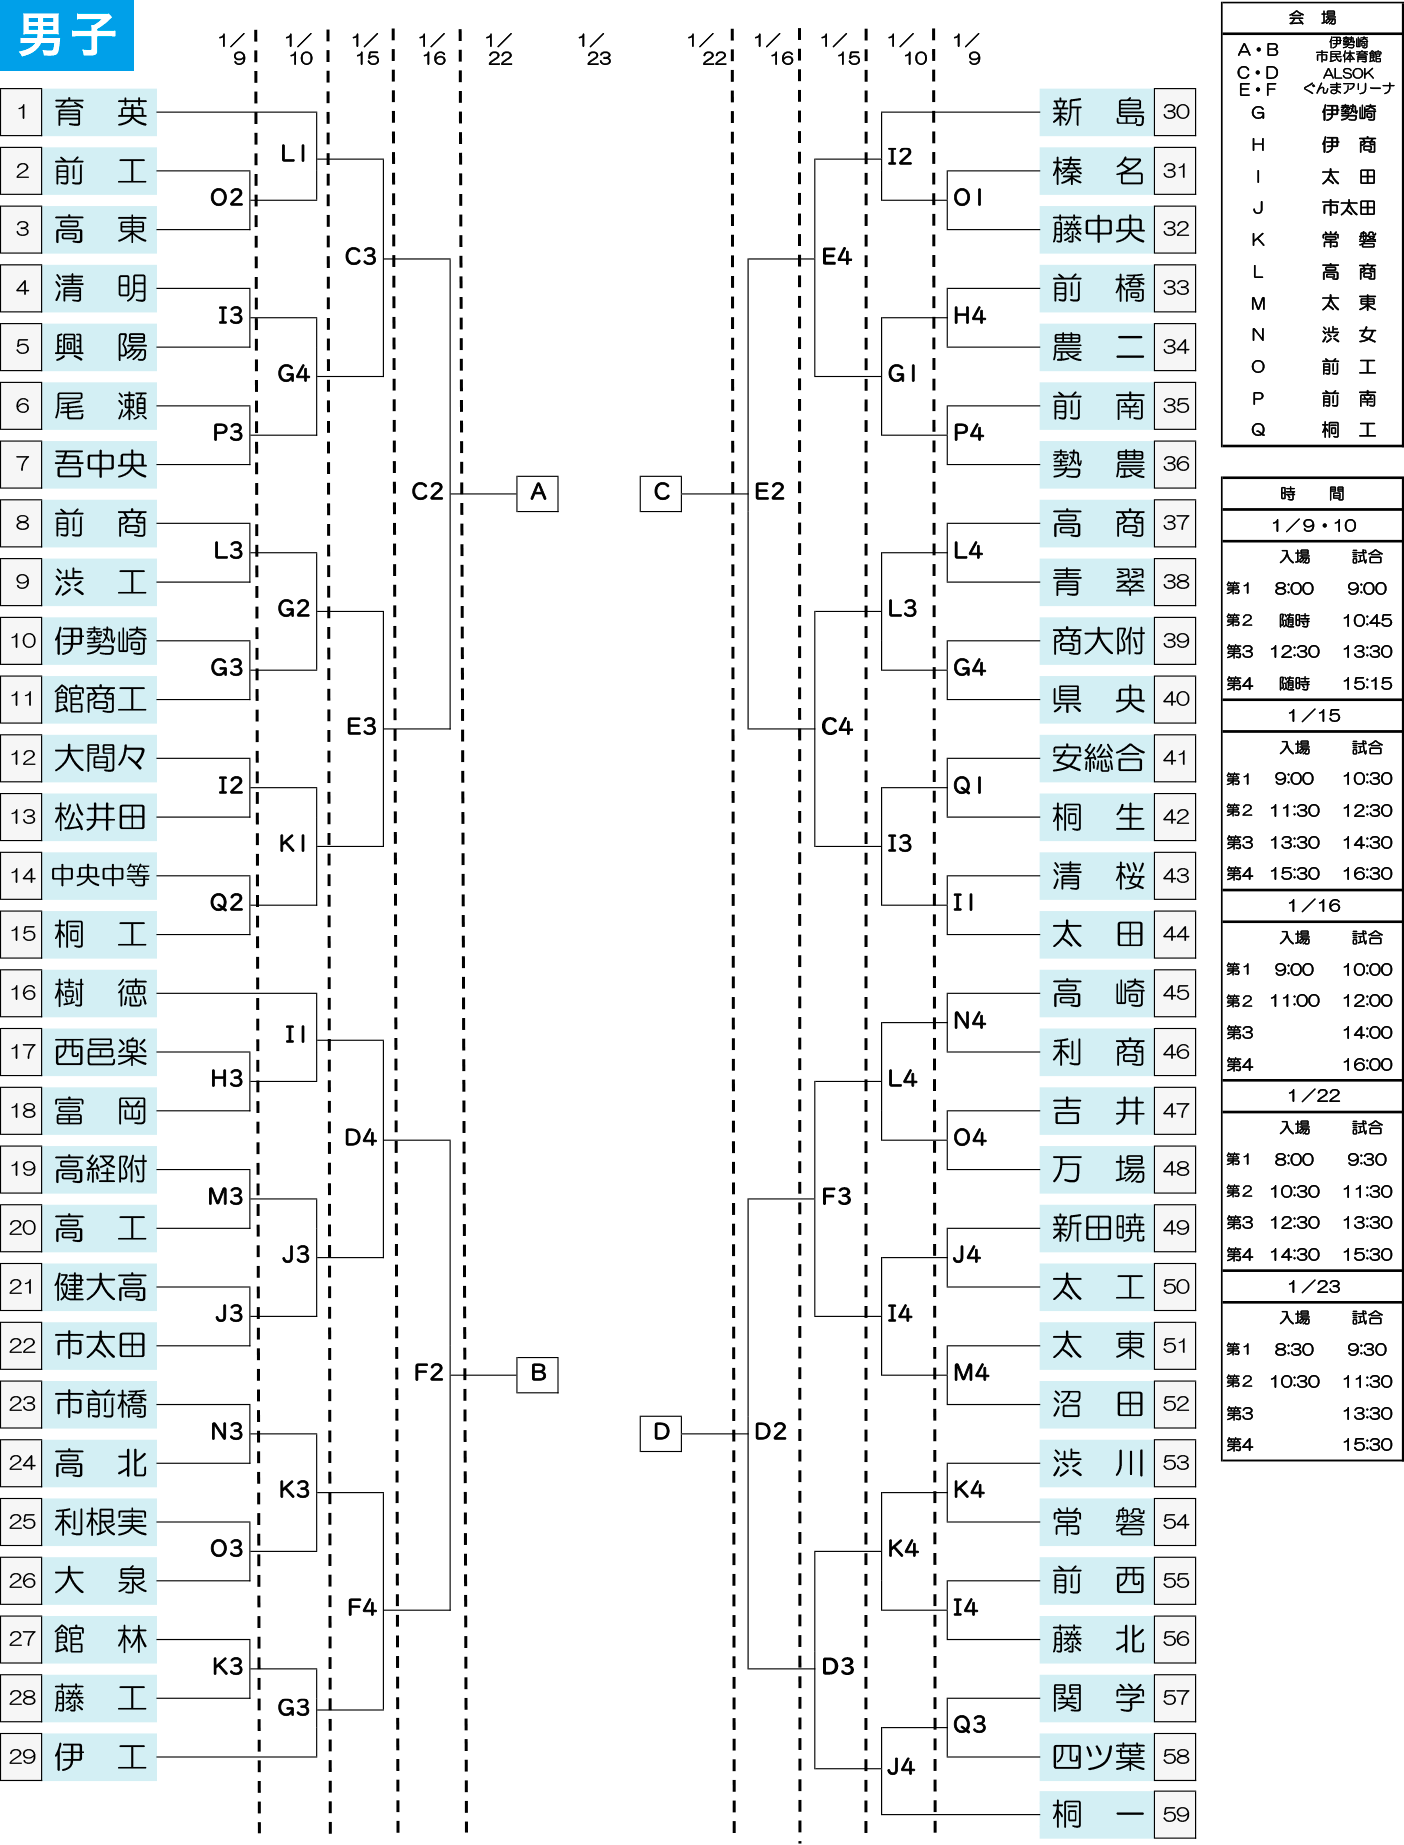 2021年度 高校新人大会(関東大会県予選) - 男子 組み合わせ